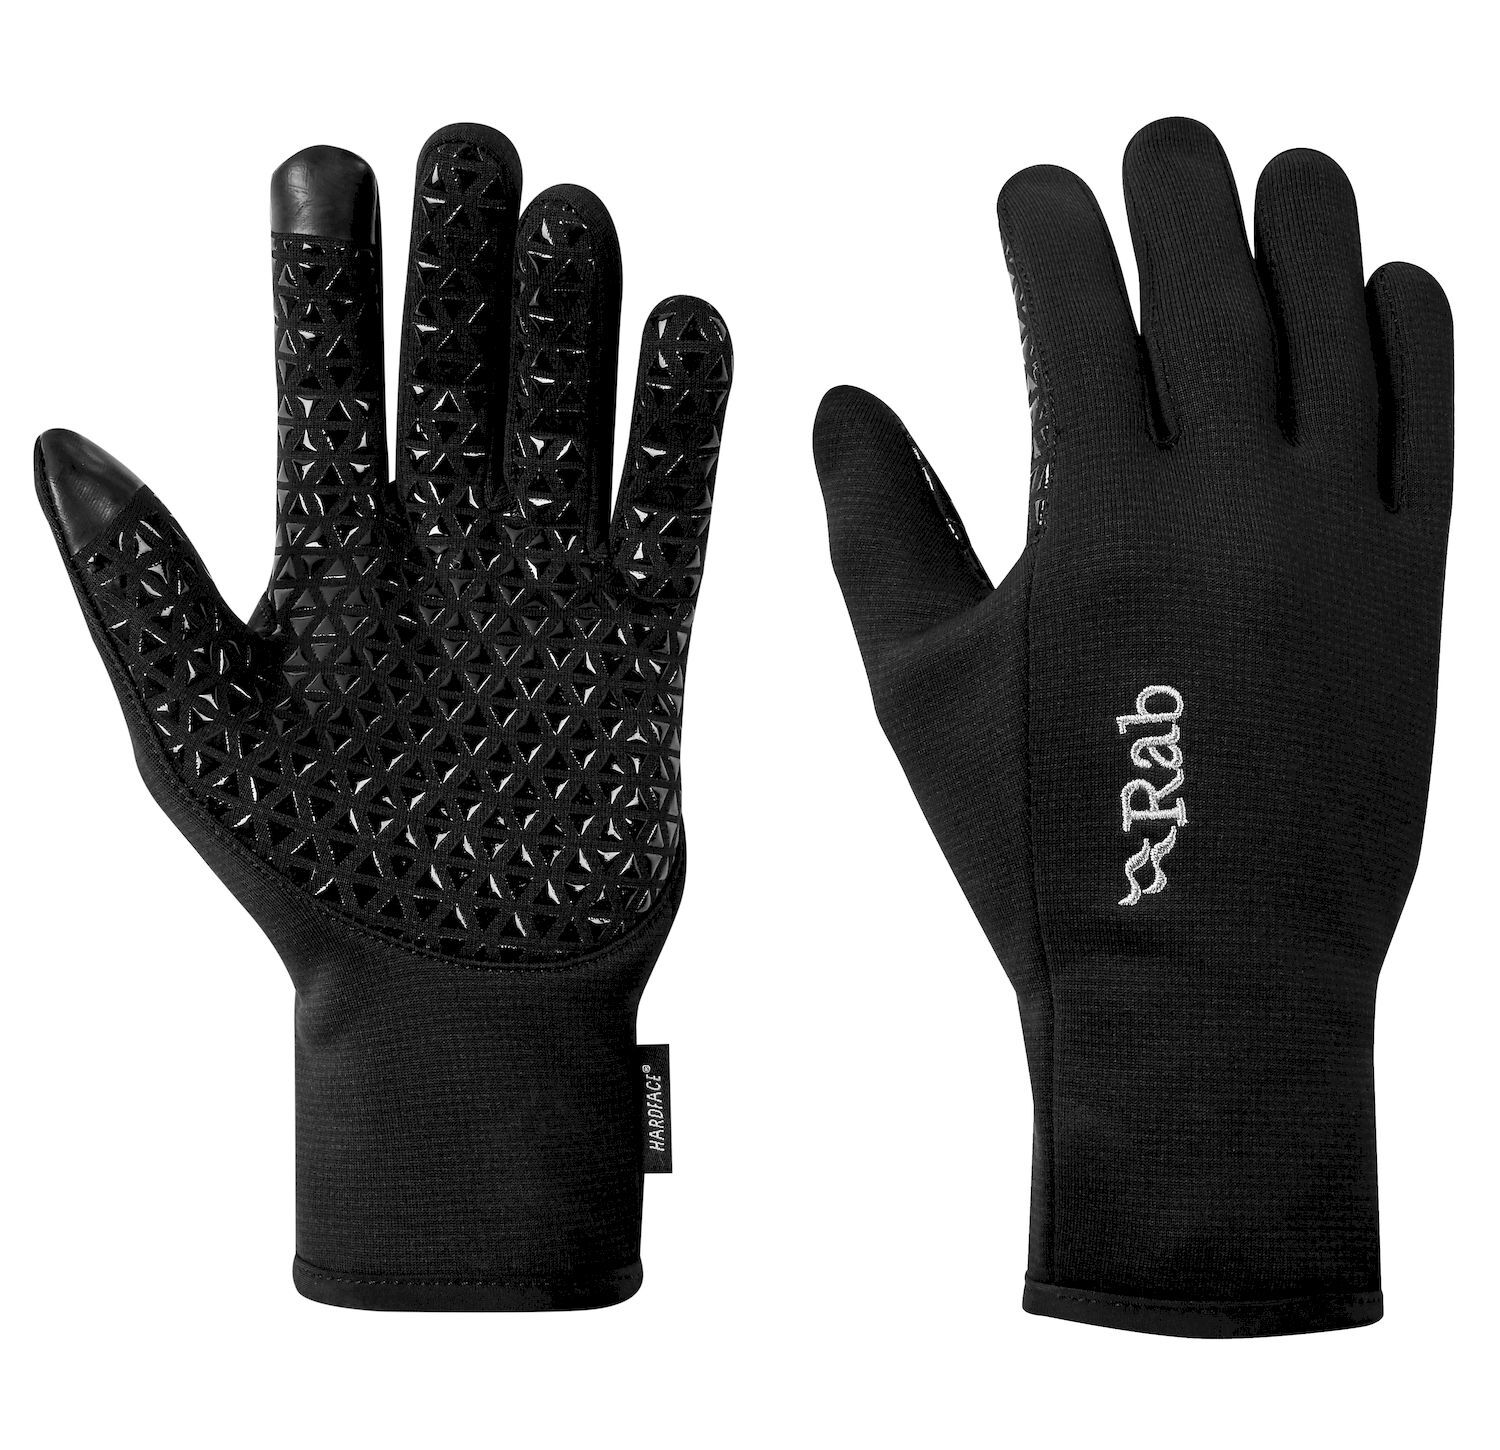 Rab Phantom Contact Grip glove - Handskar